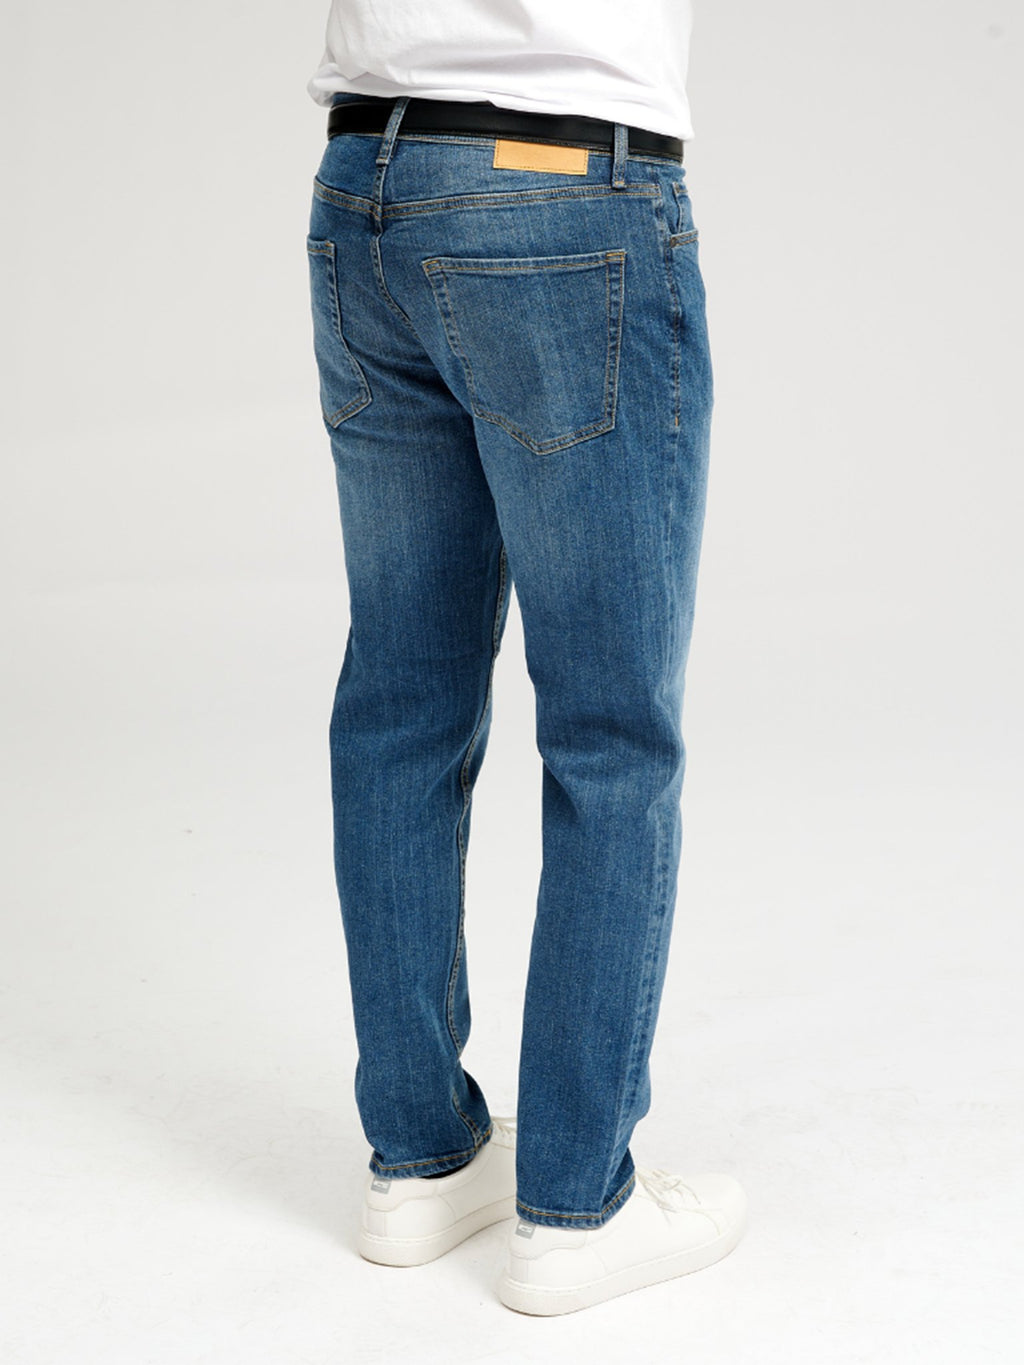 Les jeans de performance originaux (réguliers) - Denim bleu moyen